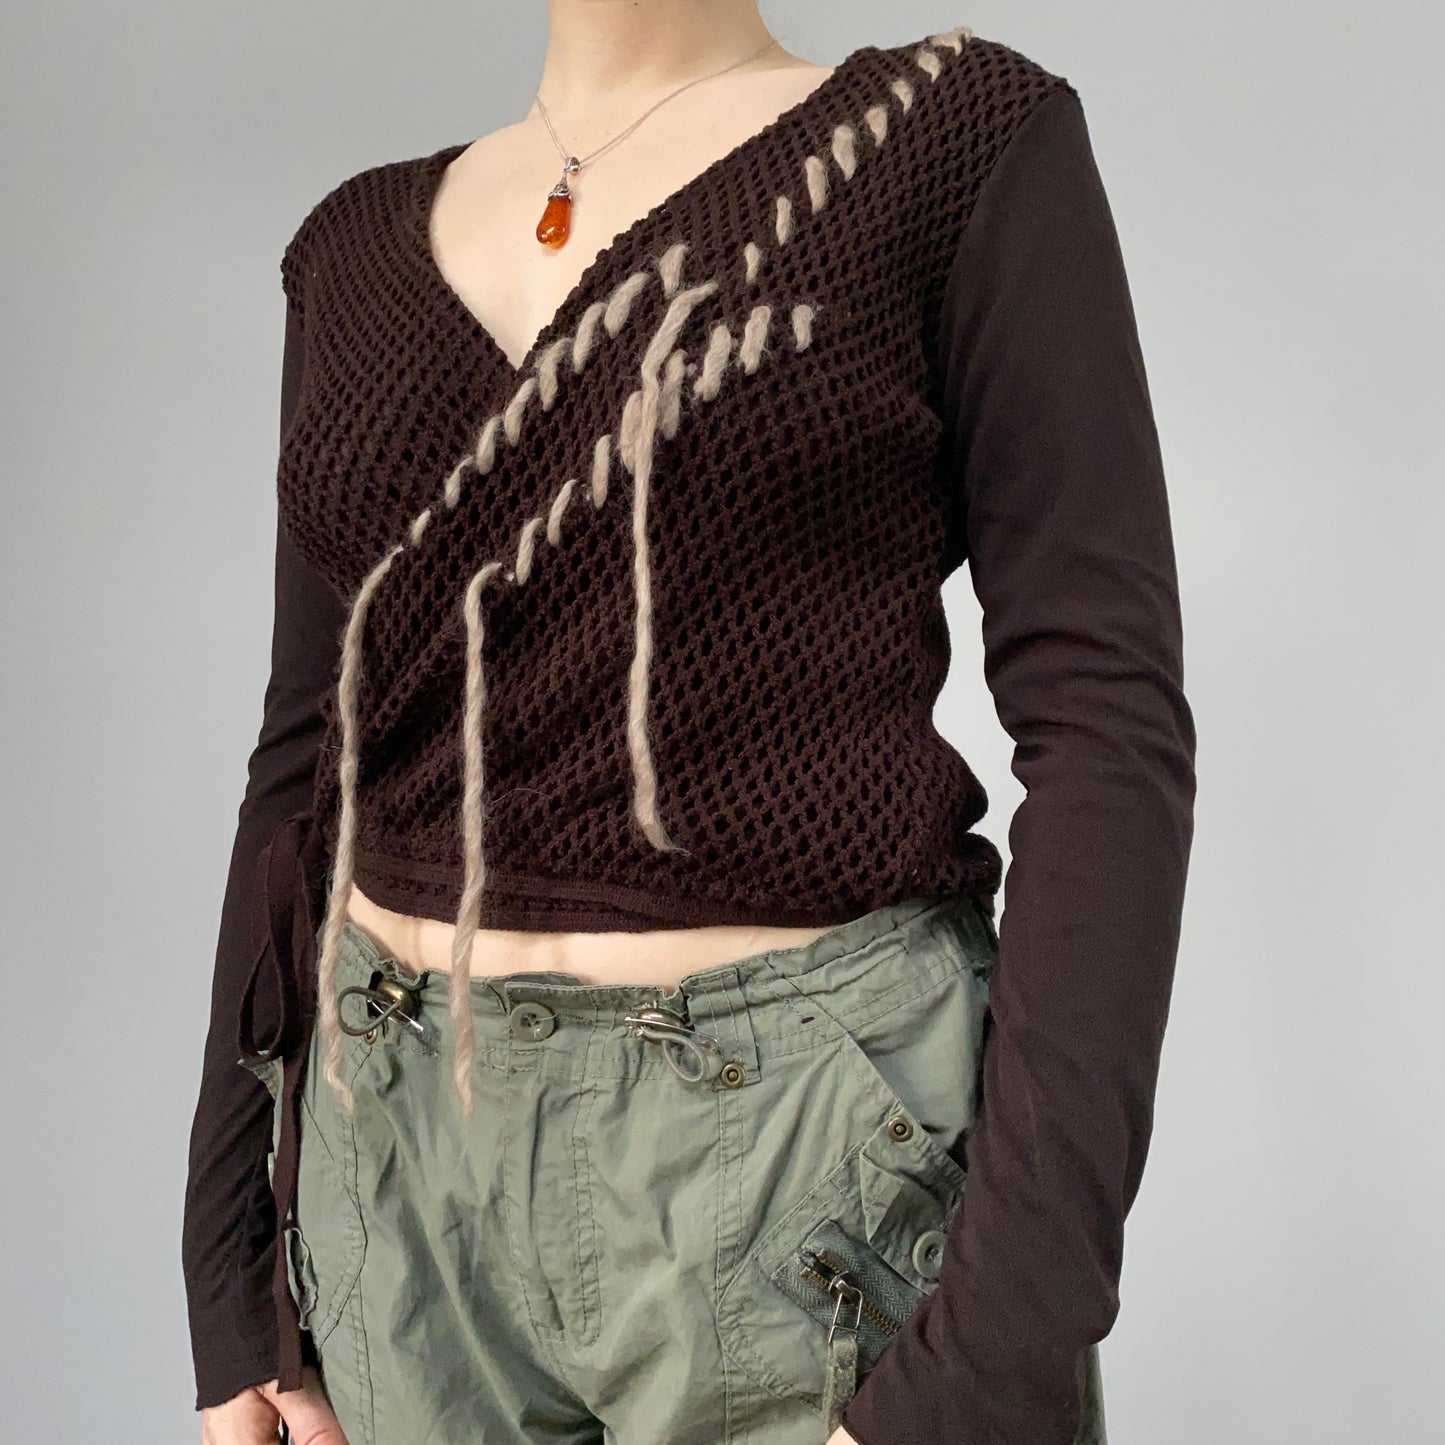 Brown knit wrap top - size M/L